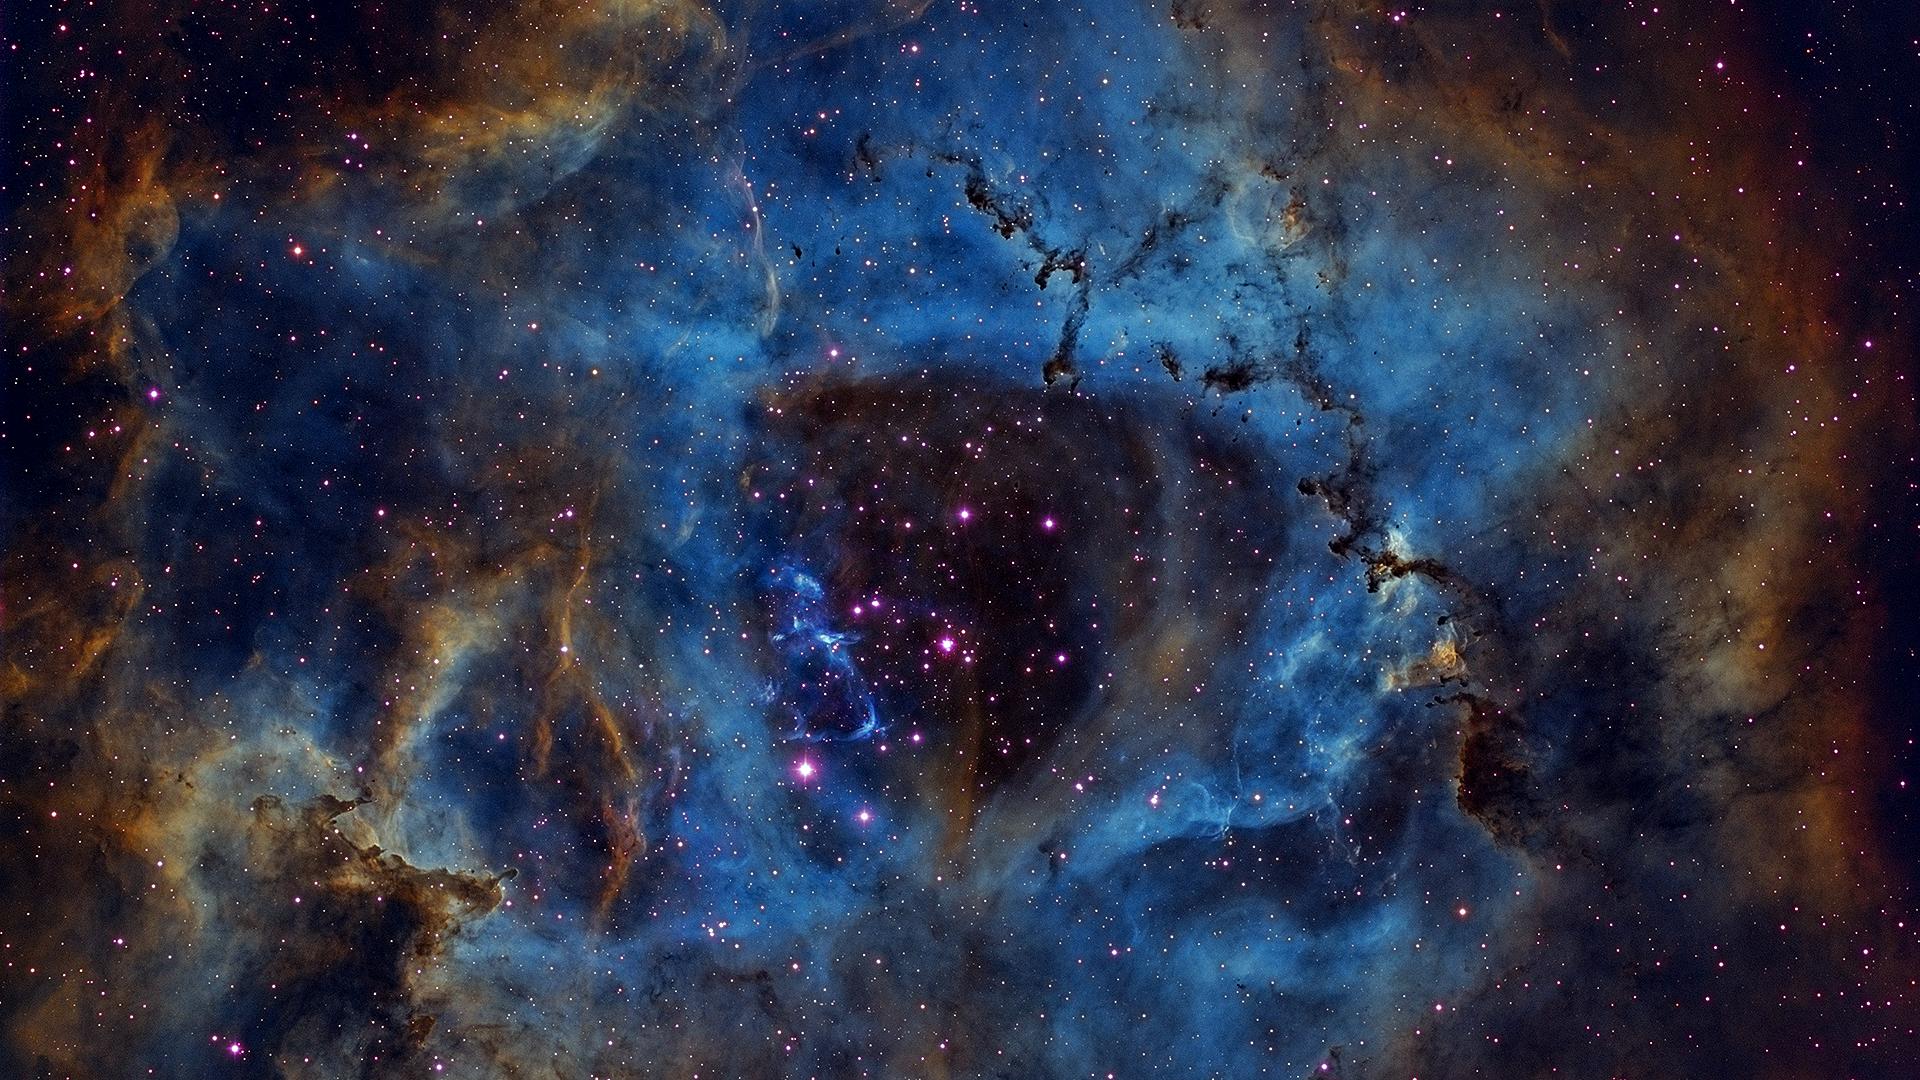 A 20 hour image I took of the Rosette Nebula